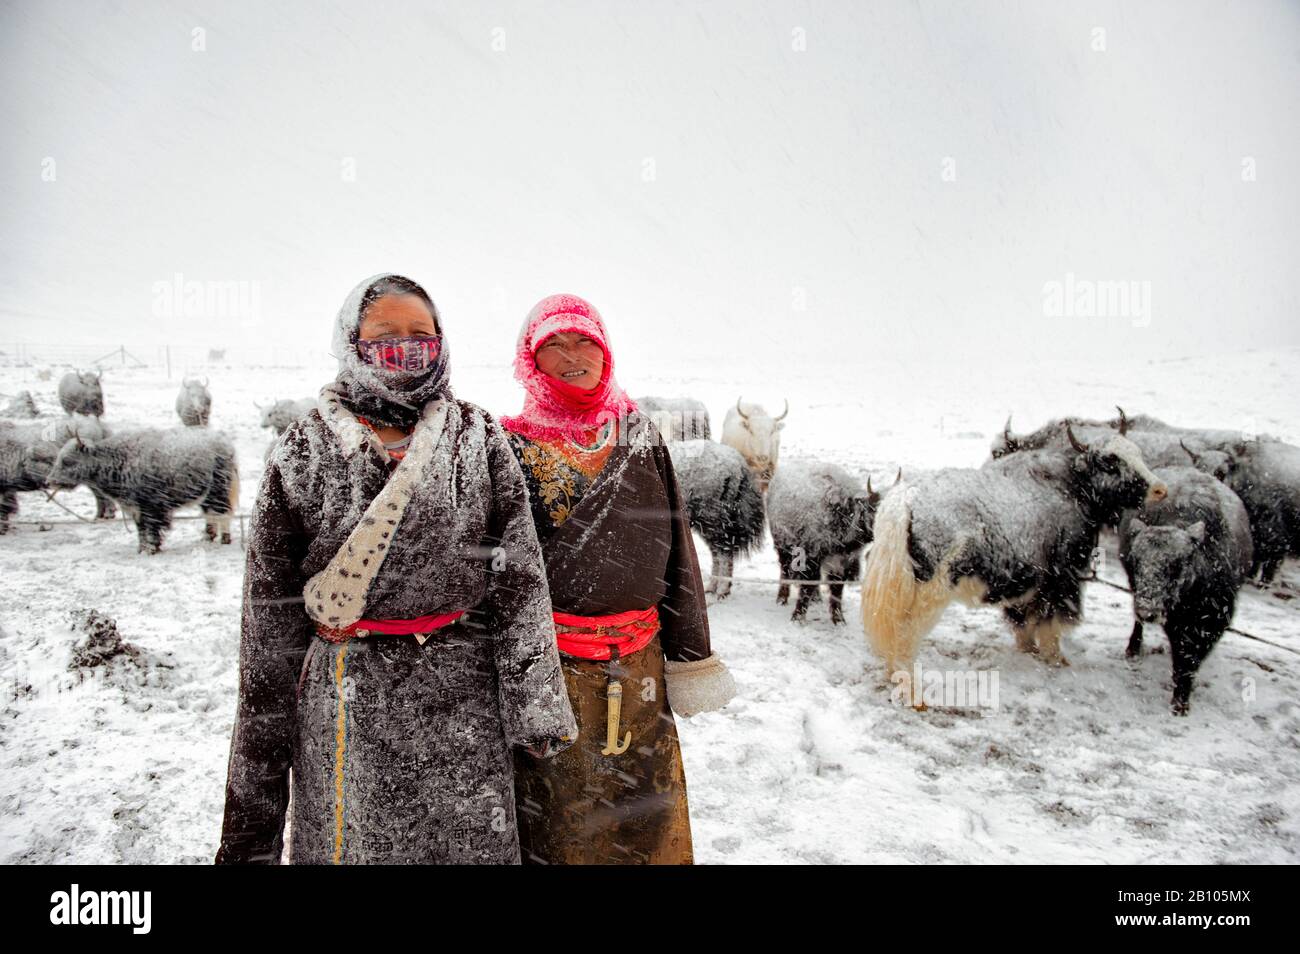 donne nomadi tibetane facendo il duro lavoro di organizzare i tuoni intorno al campeggio durante una beatitudine nelle alture dell'altopiano tibetano Foto Stock